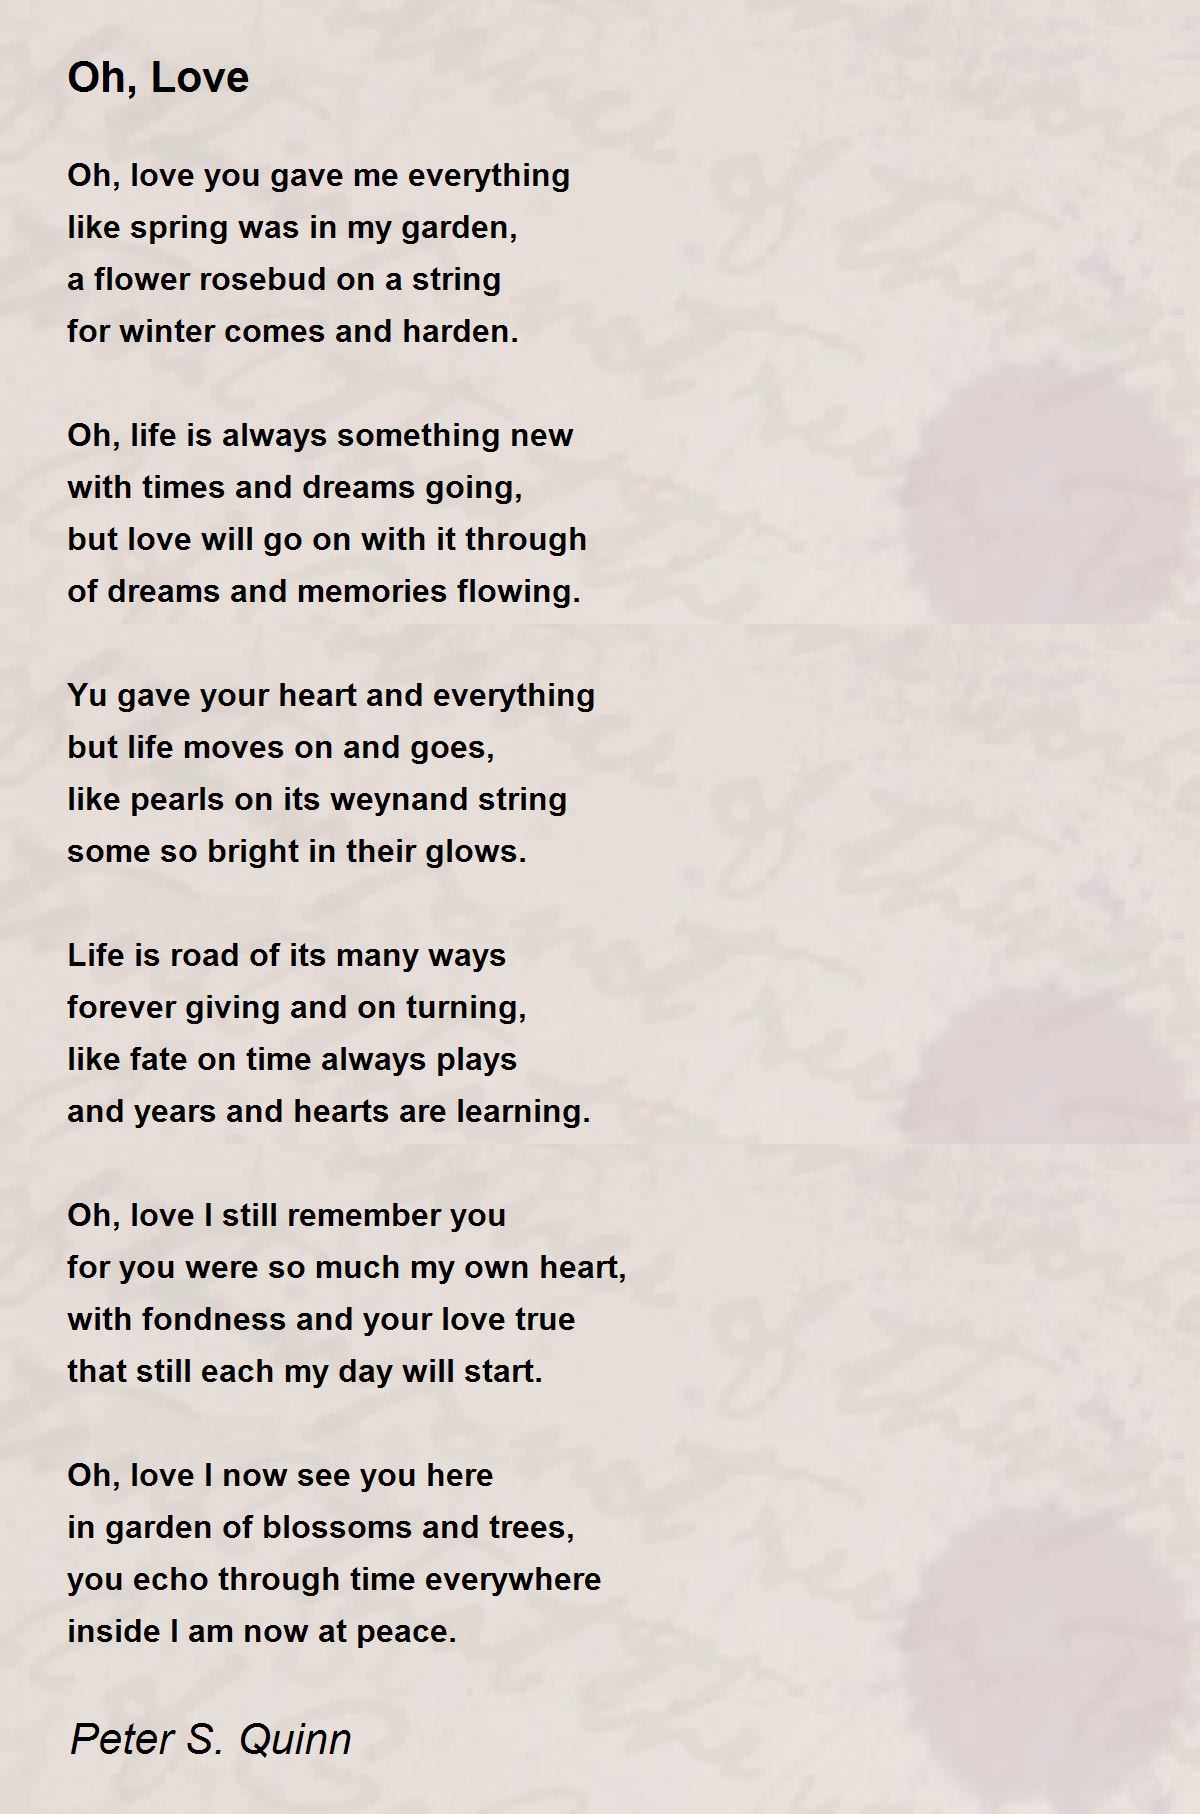 I Love You So Dearly - I Love You So Dearly Poem by Peter S. Quinn